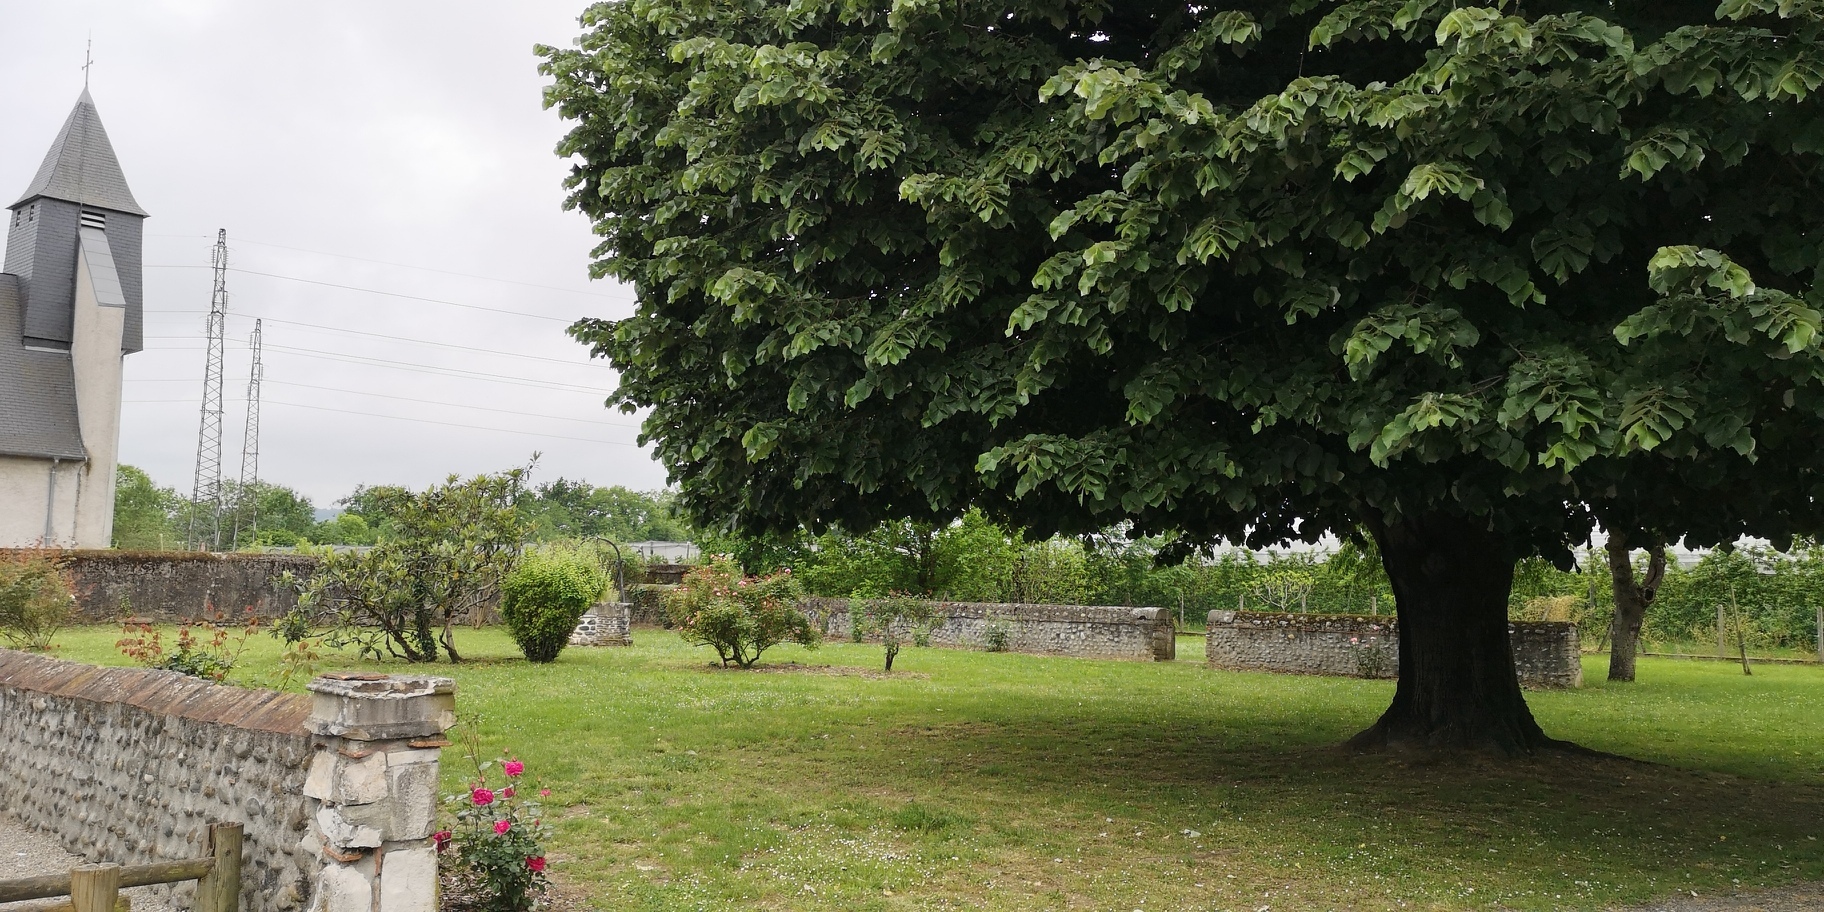 Au premier plan, un tilleul situé dans un jardin clôturé par des murets en galets. En arrière-plan, il y a une église.